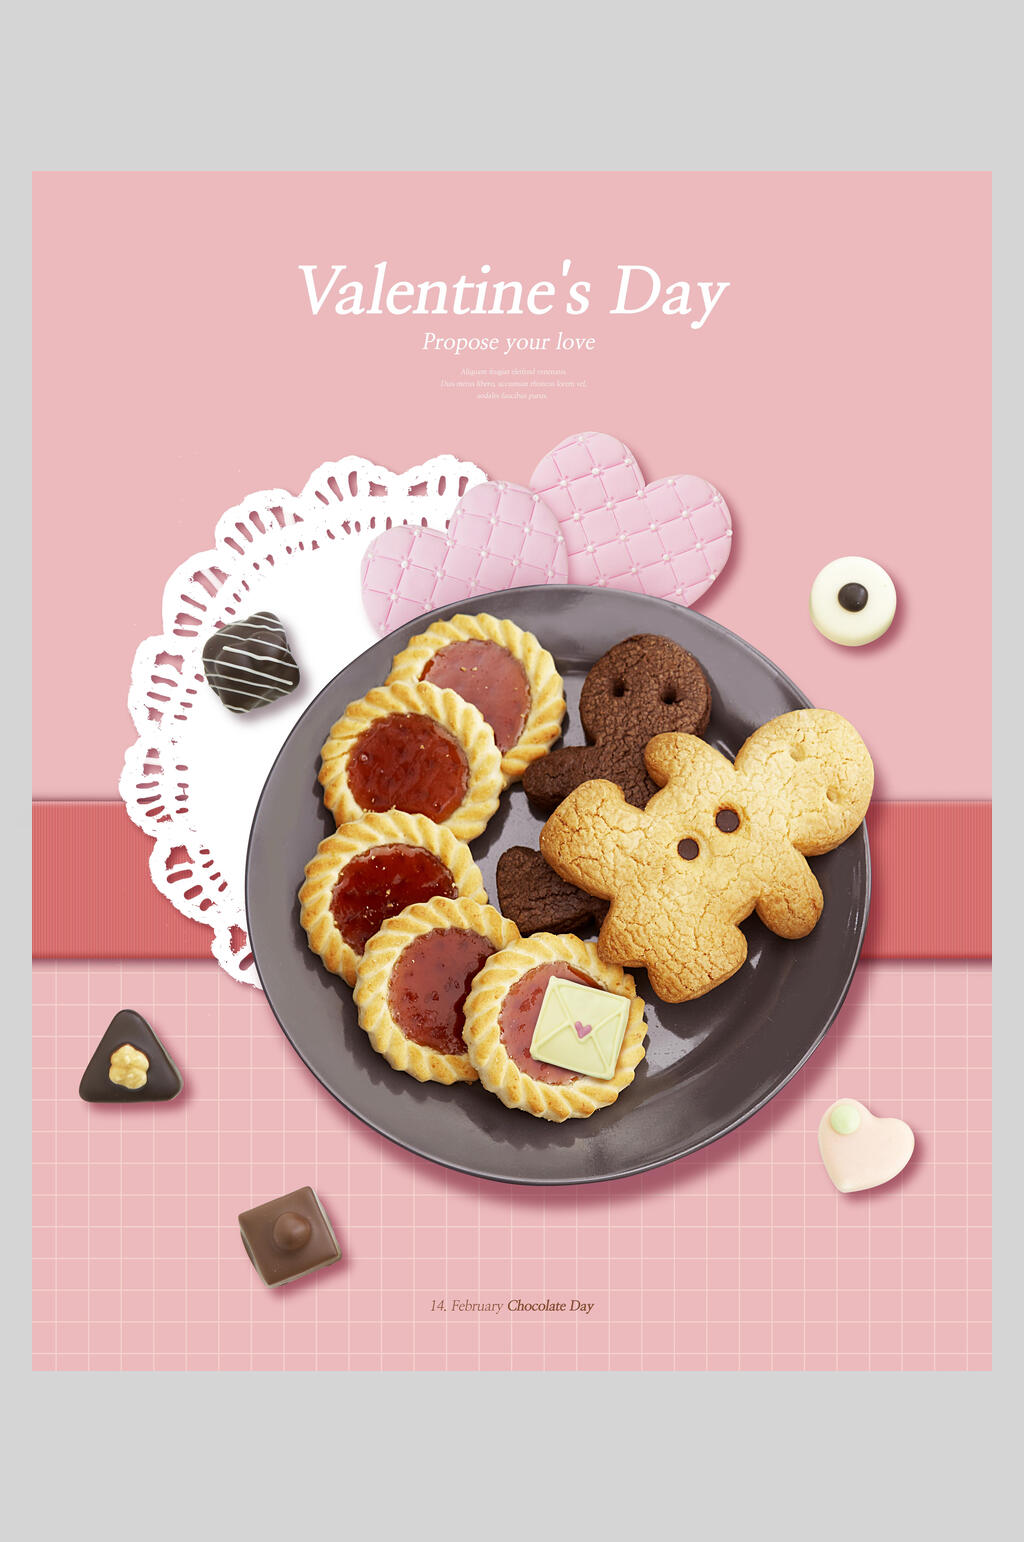 众图网独家提供巧克力美食饼干曲奇海报素材免费下载,本作品是由方方